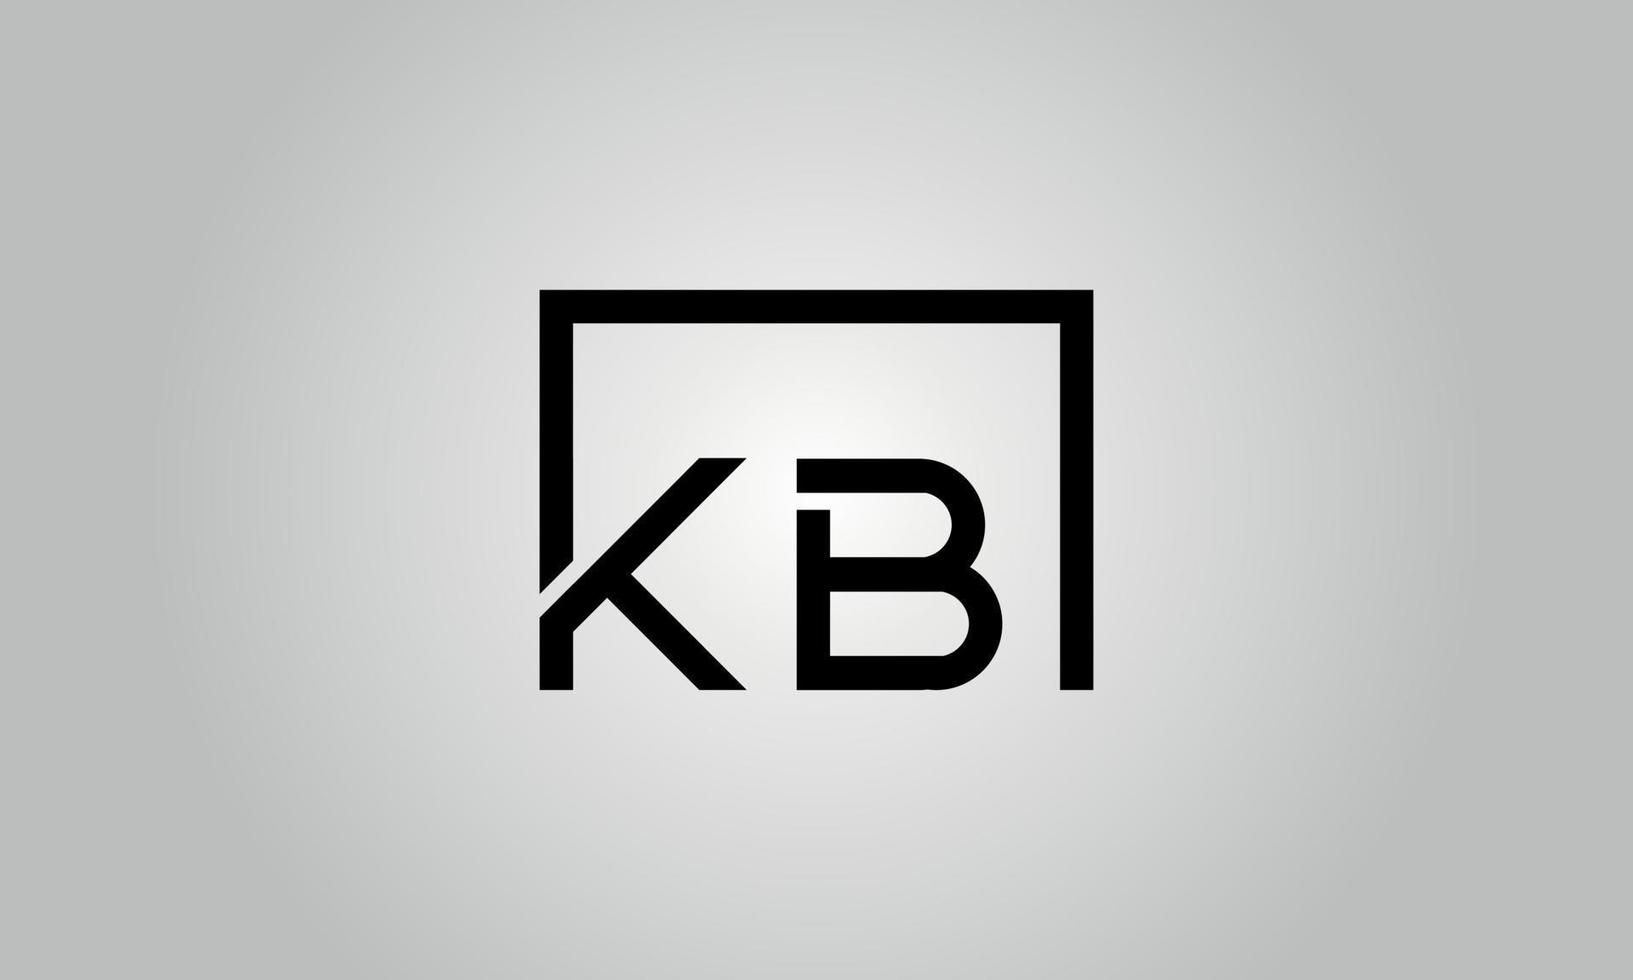 Buchstabe kb-Logo-Design. kb-Logo mit quadratischer Form in schwarzen Farben Vektor kostenlose Vektorvorlage.